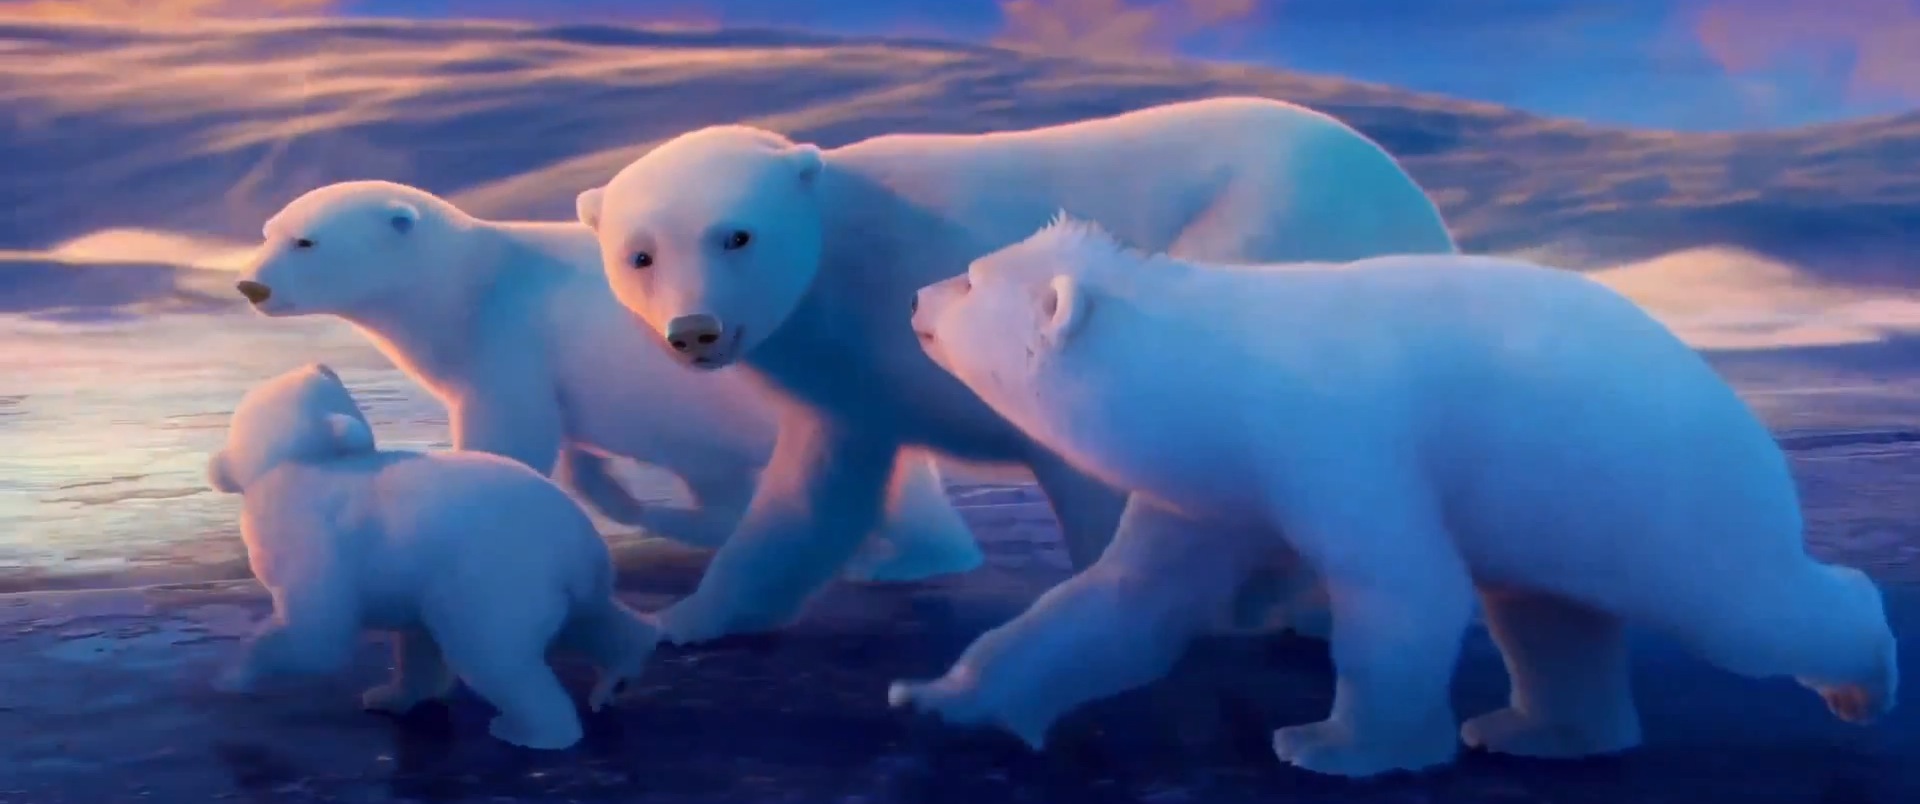 Coca-Cola - Polar Bears 20135